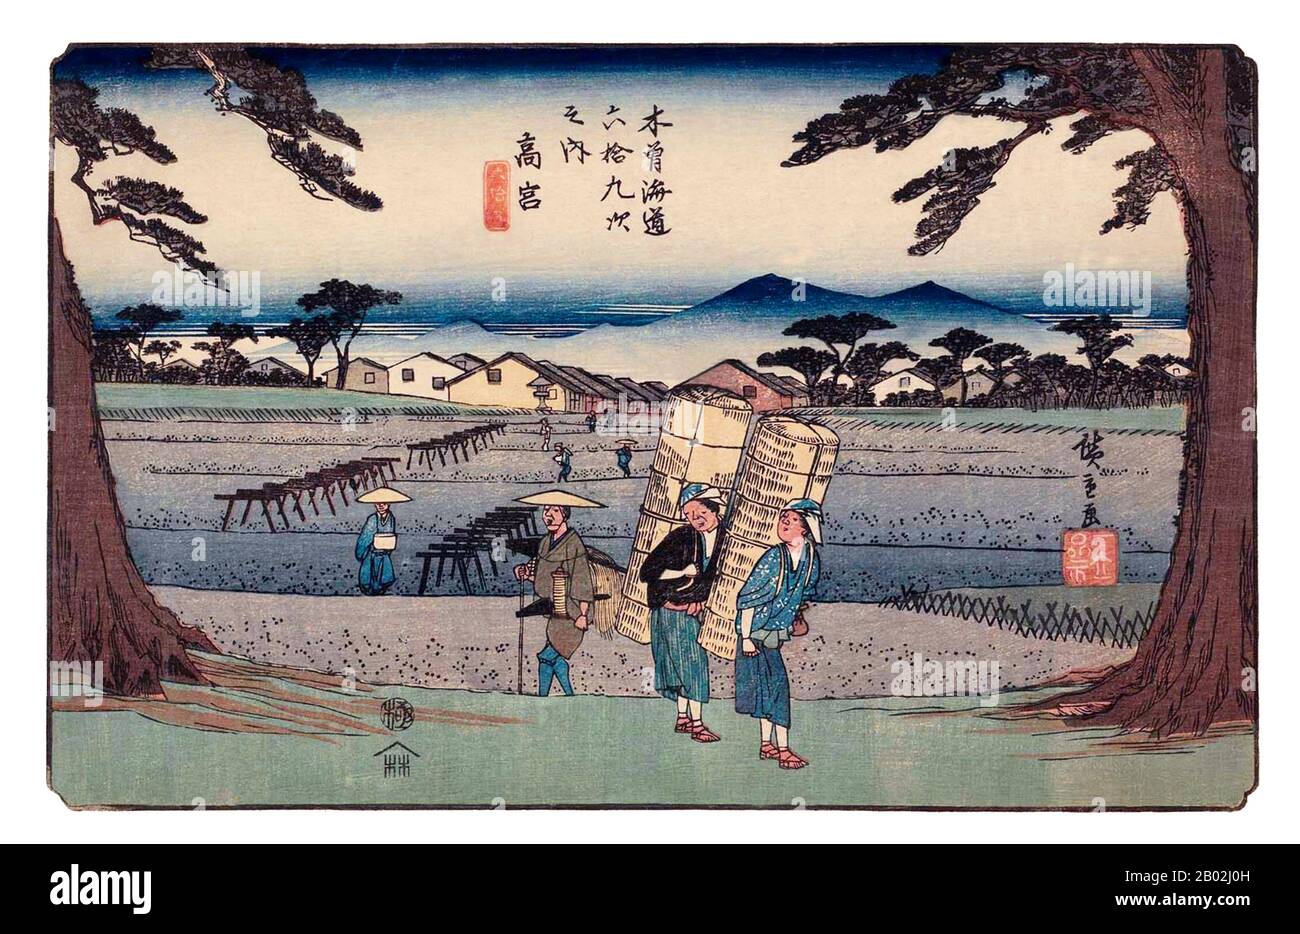 Las sesenta y nueve Estaciones del Kiso Kaidō (木曾街道六十九次 Kiso Kaidō Rokujūkyū-tsugi) o sesenta y nueve Estaciones del camino Kiso, son una serie de obras de ukiyo-e creadas por Utagawa Hiroshige (1797-1858) y Keisai Eisen (1790-1848). Hay 71 impresiones en total en la serie (una para cada una de las 69 estaciones de correos y Nihonbashi; Nakatsugawa-juku tiene dos copias). El nombre común para el Kiso Kaidō es 'Nakasendō' o 'Central Mountain Highway', por lo que esta serie es también comúnmente conocida como las sesenta y nueve Estaciones del Nakasendō. El Nakasendō fue una de Las Cinco rutas construidas bajo Tokugawa Ieyasu, A. Foto de stock